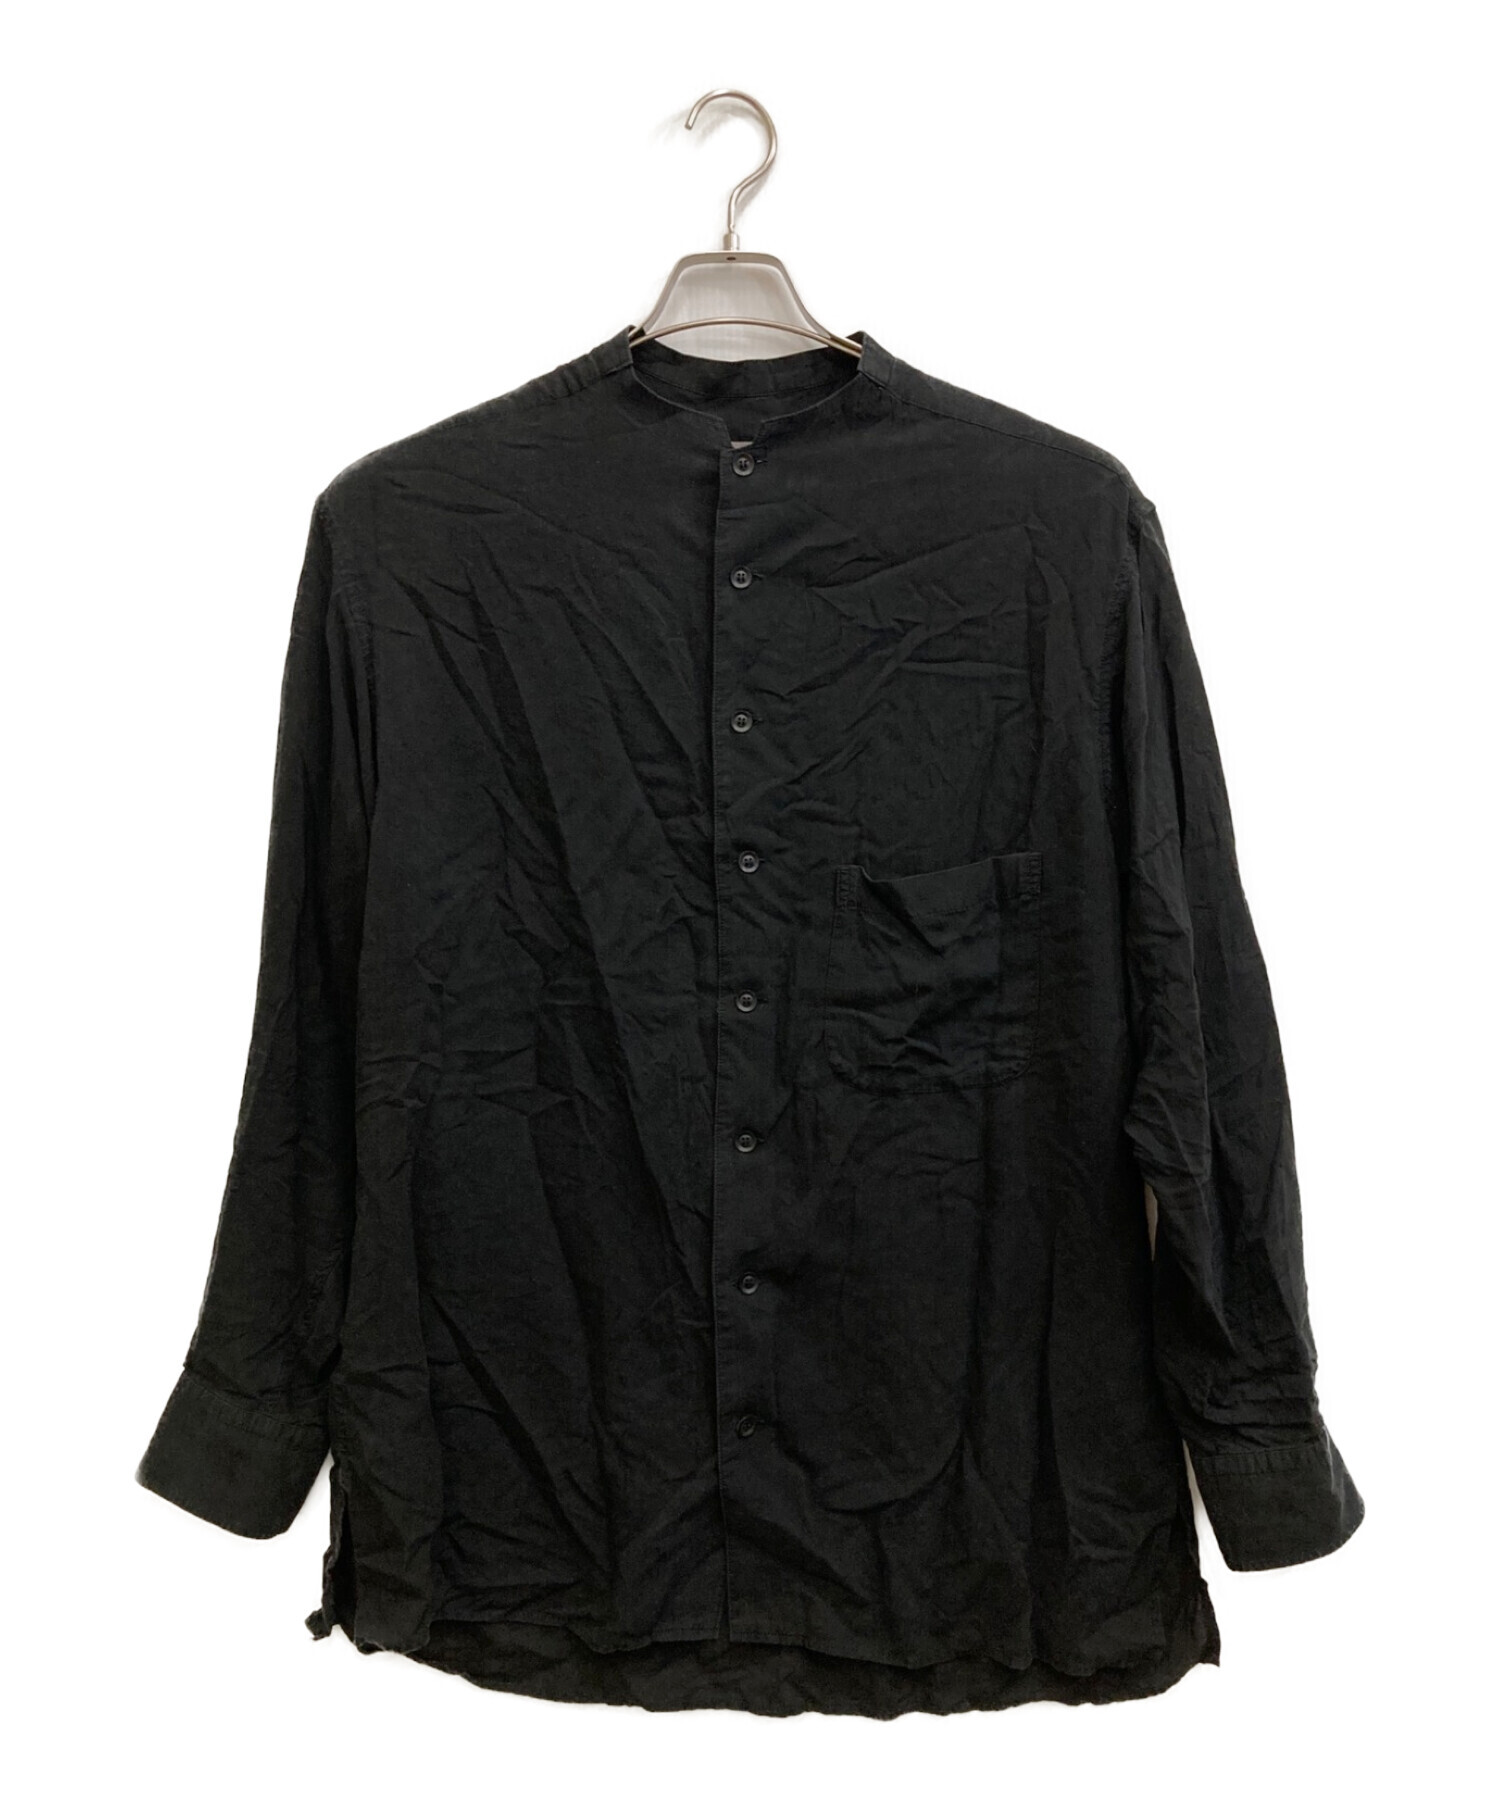 Yohji Yamamoto pour homme (ヨウジヤマモト プールオム) テンセルノーカラーシャツ ブラック サイズ:2